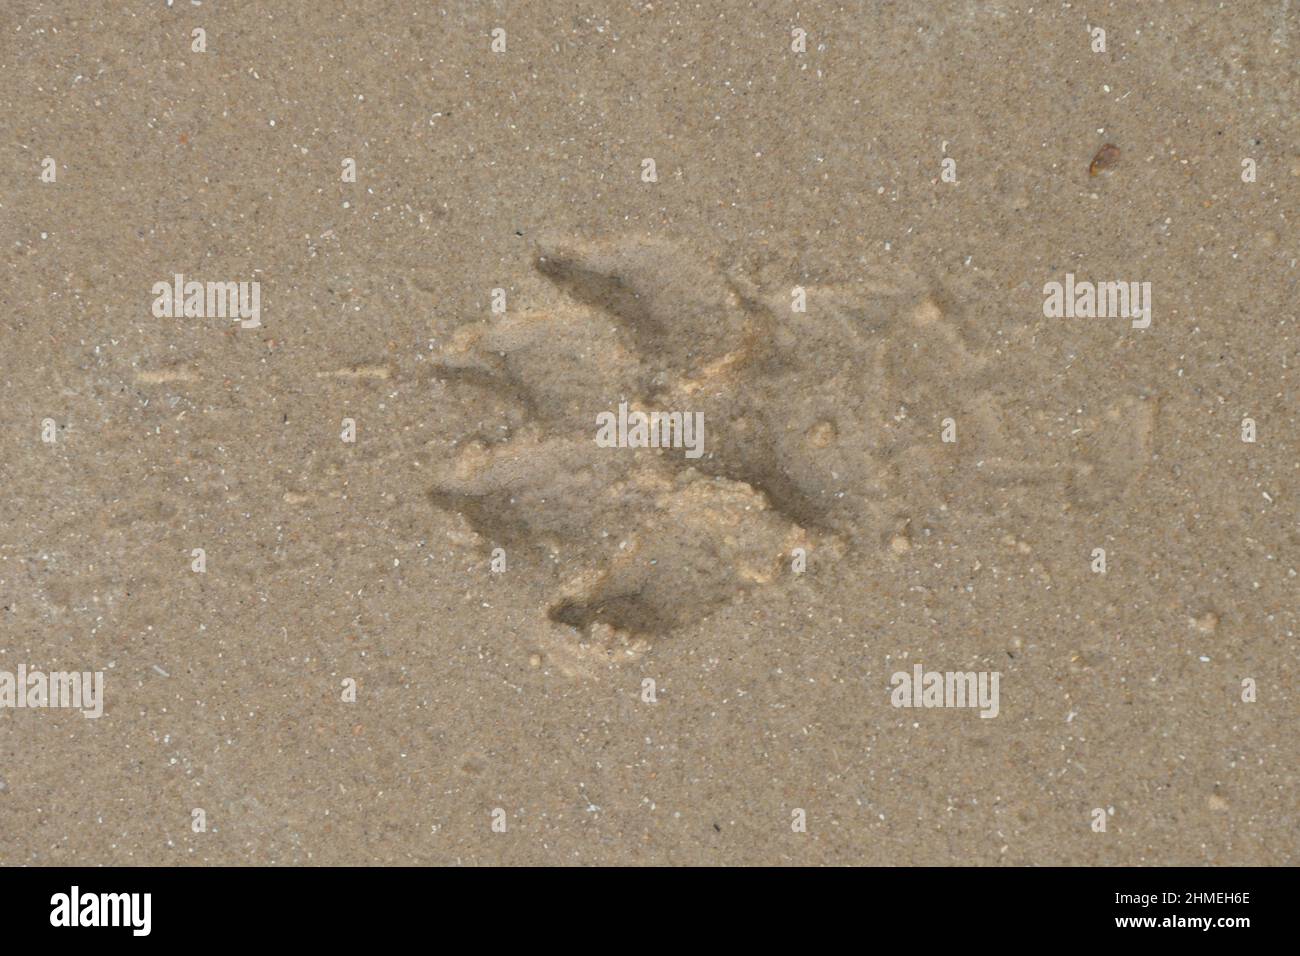 Ein Druck einer Hundepfote am gelben Sandstrand. Aus nächster Nähe gesehen. Stockfoto